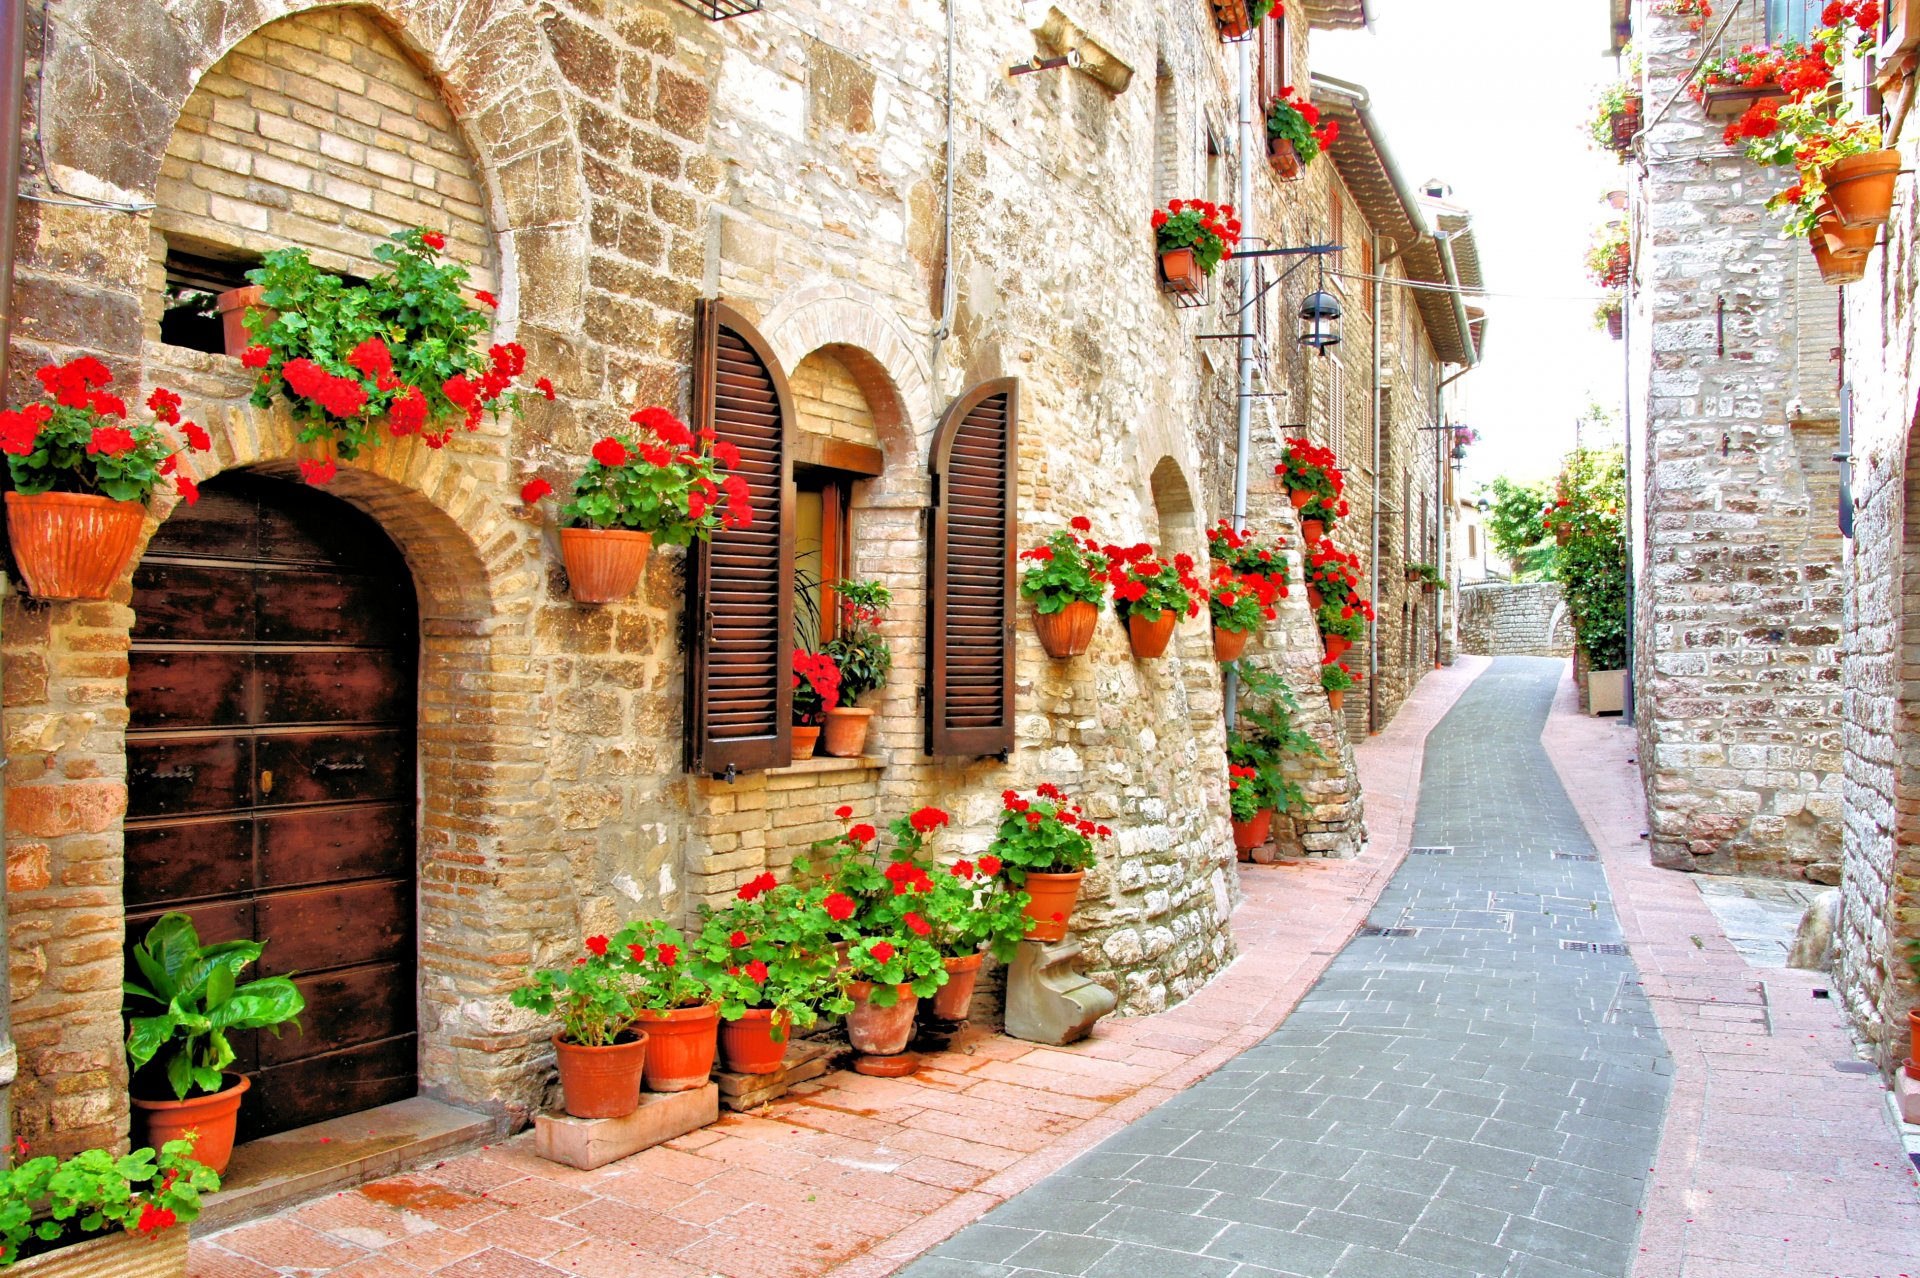 италия дома улочка горшки цветы красные герань